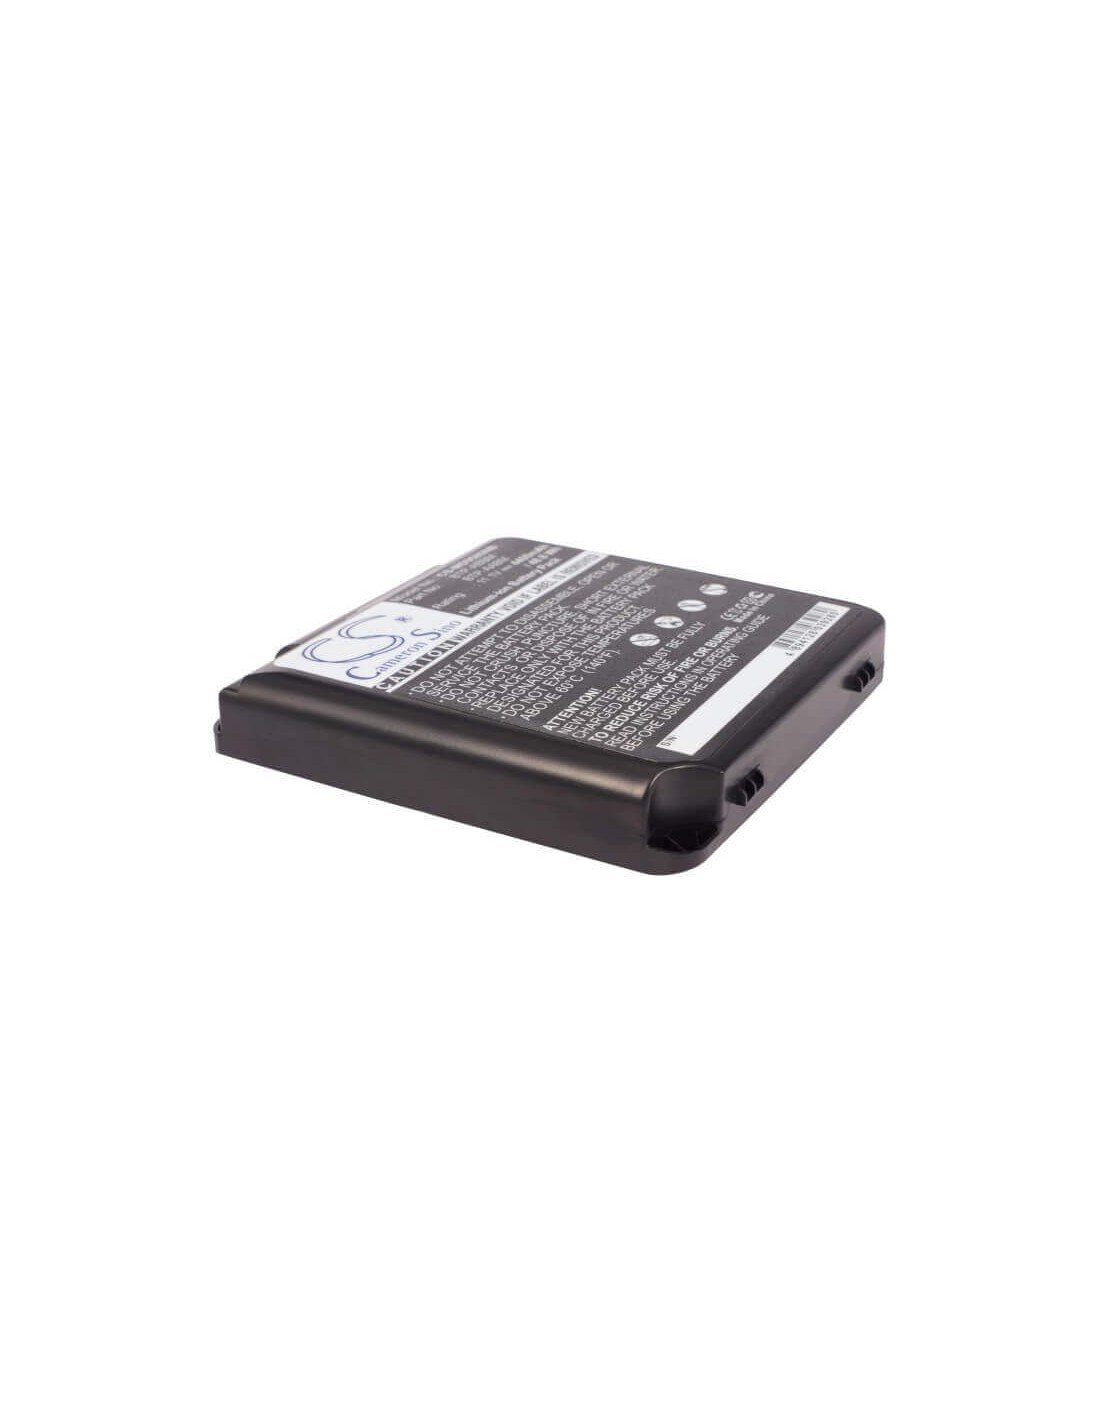 Black Battery for Medion Md95800, Wim2070, Md95453 11.1V, 4400mAh - 48.84Wh